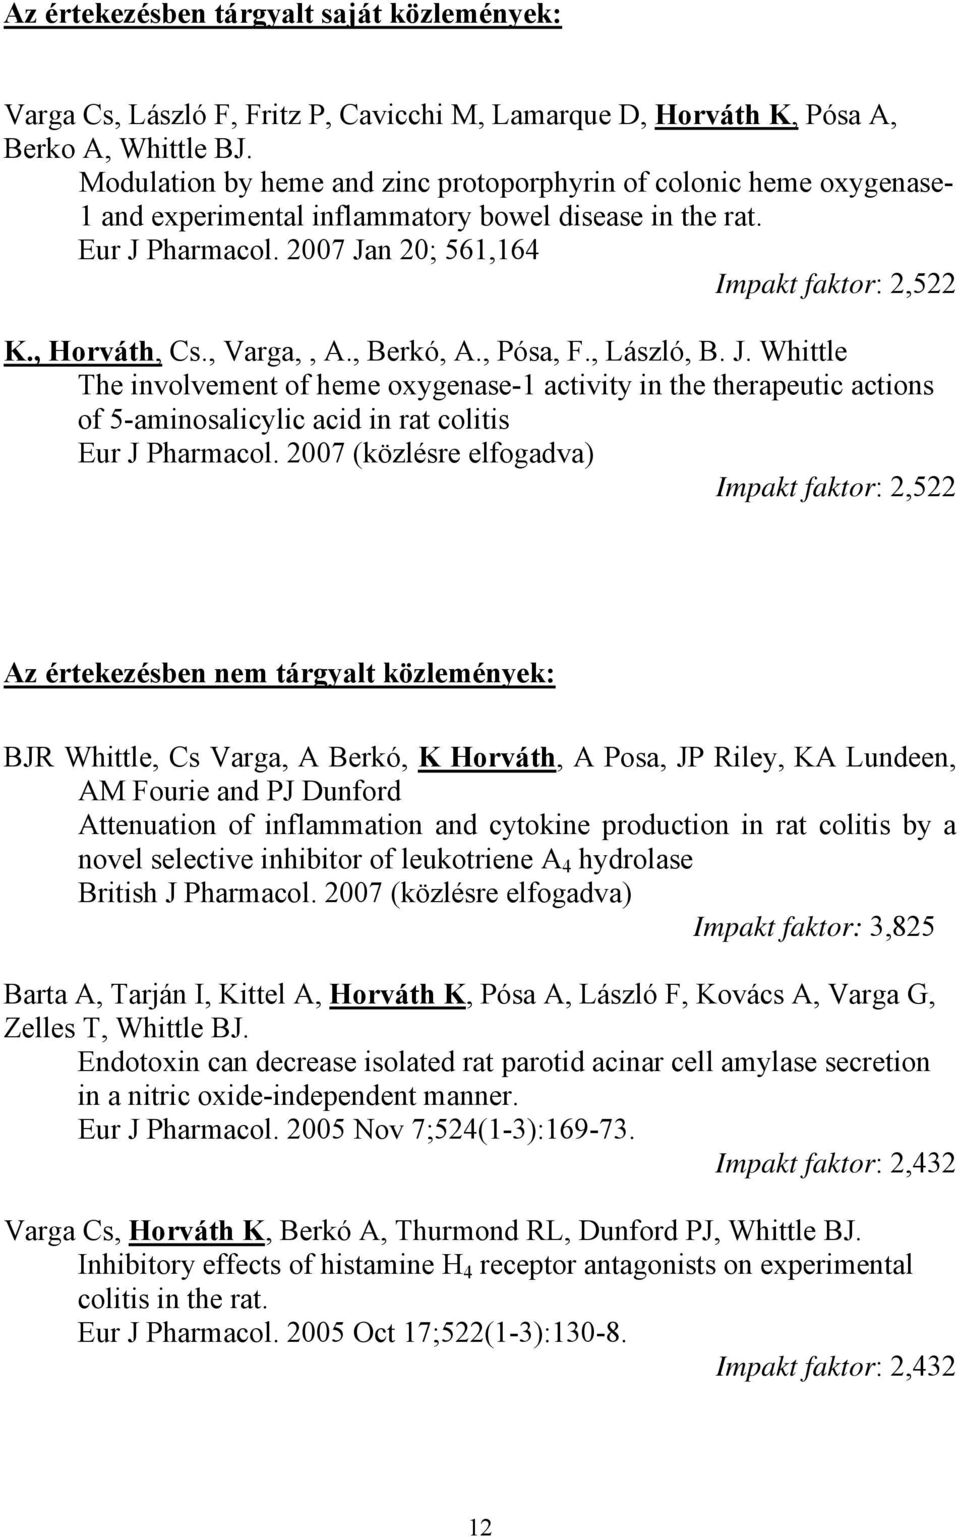 , Horváth, Cs., Varga,, A., Berkó, A., Pósa, F., László, B. J. Whittle The involvement of heme oxygenase-1 activity in the therapeutic actions of 5-aminosalicylic acid in rat colitis Eur J Pharmacol.